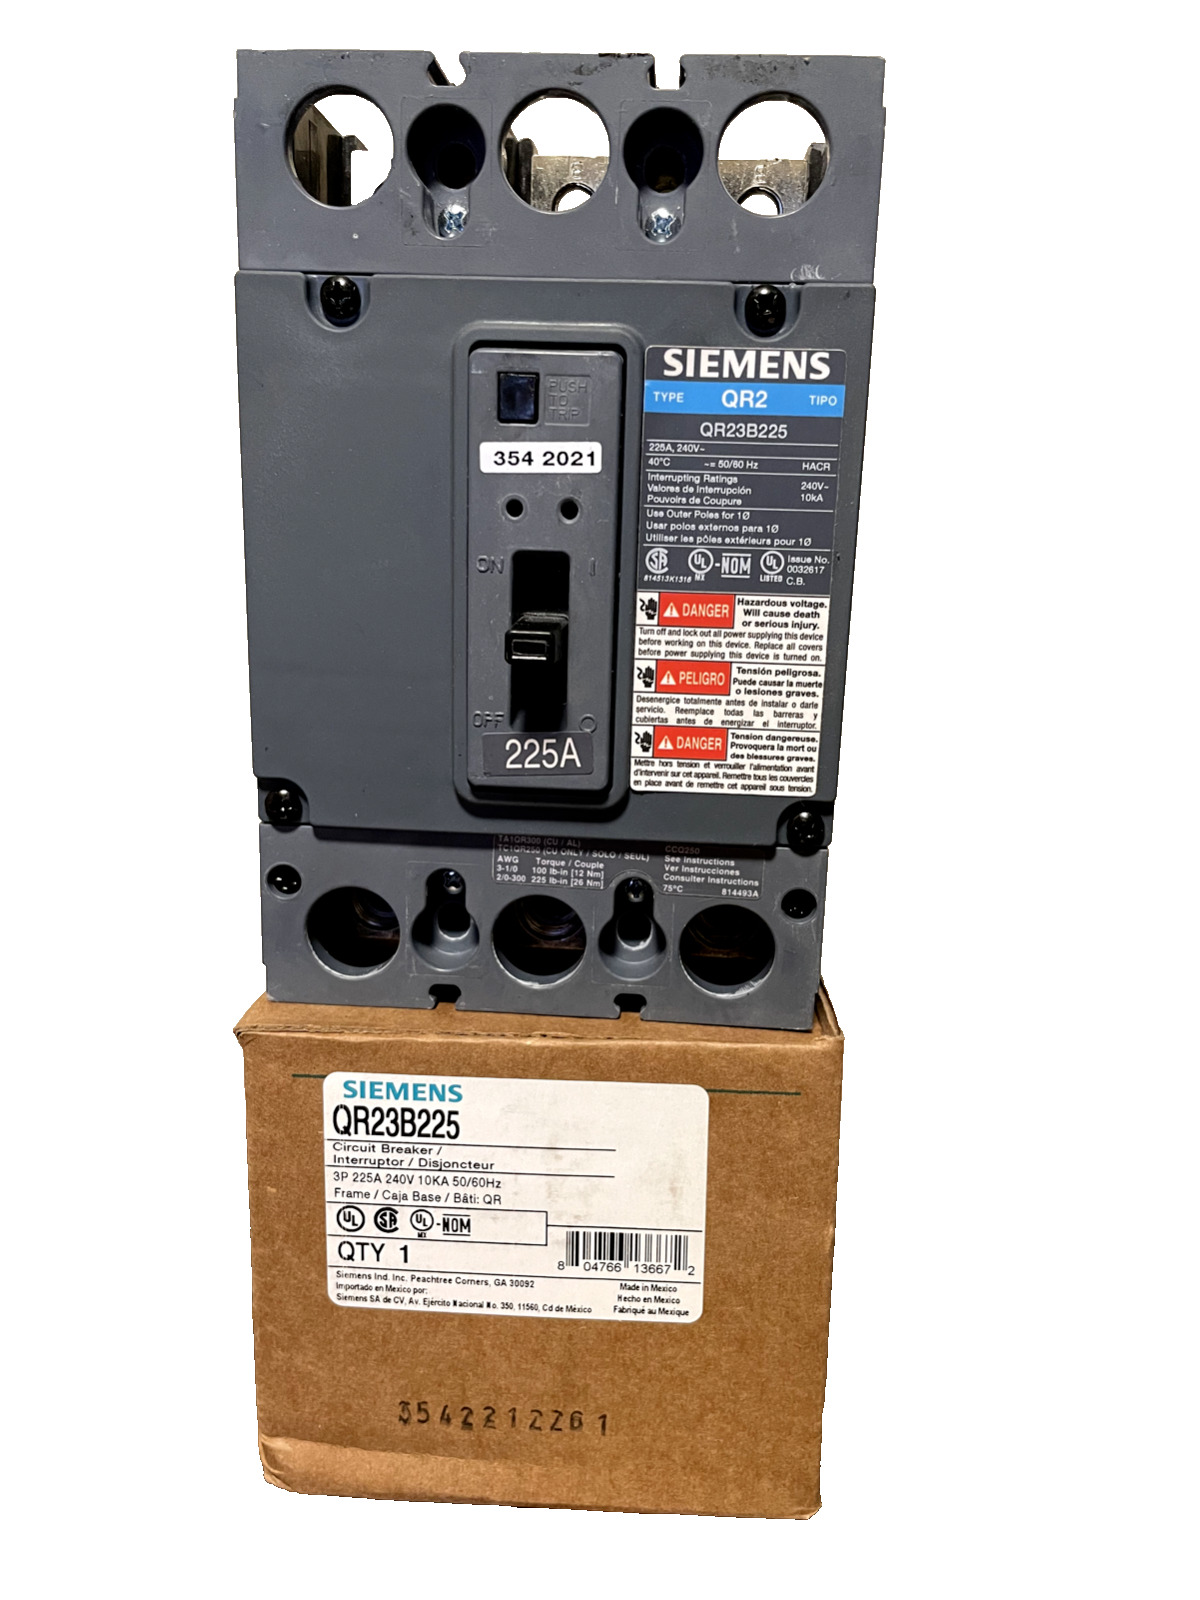 NEW Siemens QR23B225 3p 240v 225a 10k Circuit Breaker NEW IN BOX 10AVL